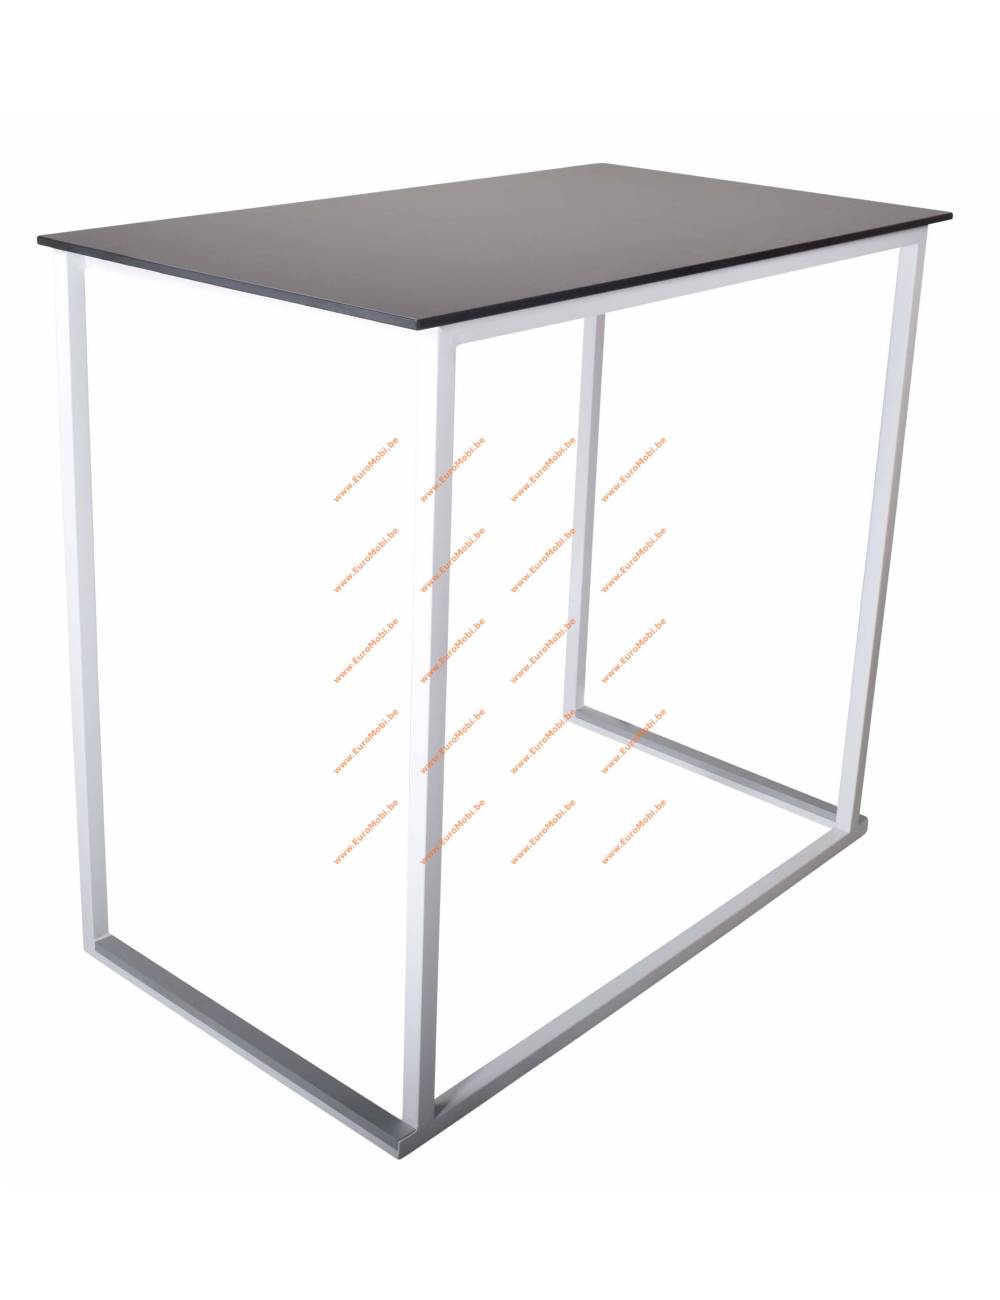 Statafel - Moma Square - 120 70 cm - Compact blad Frame kleur Witte structuur Kleur Concrete